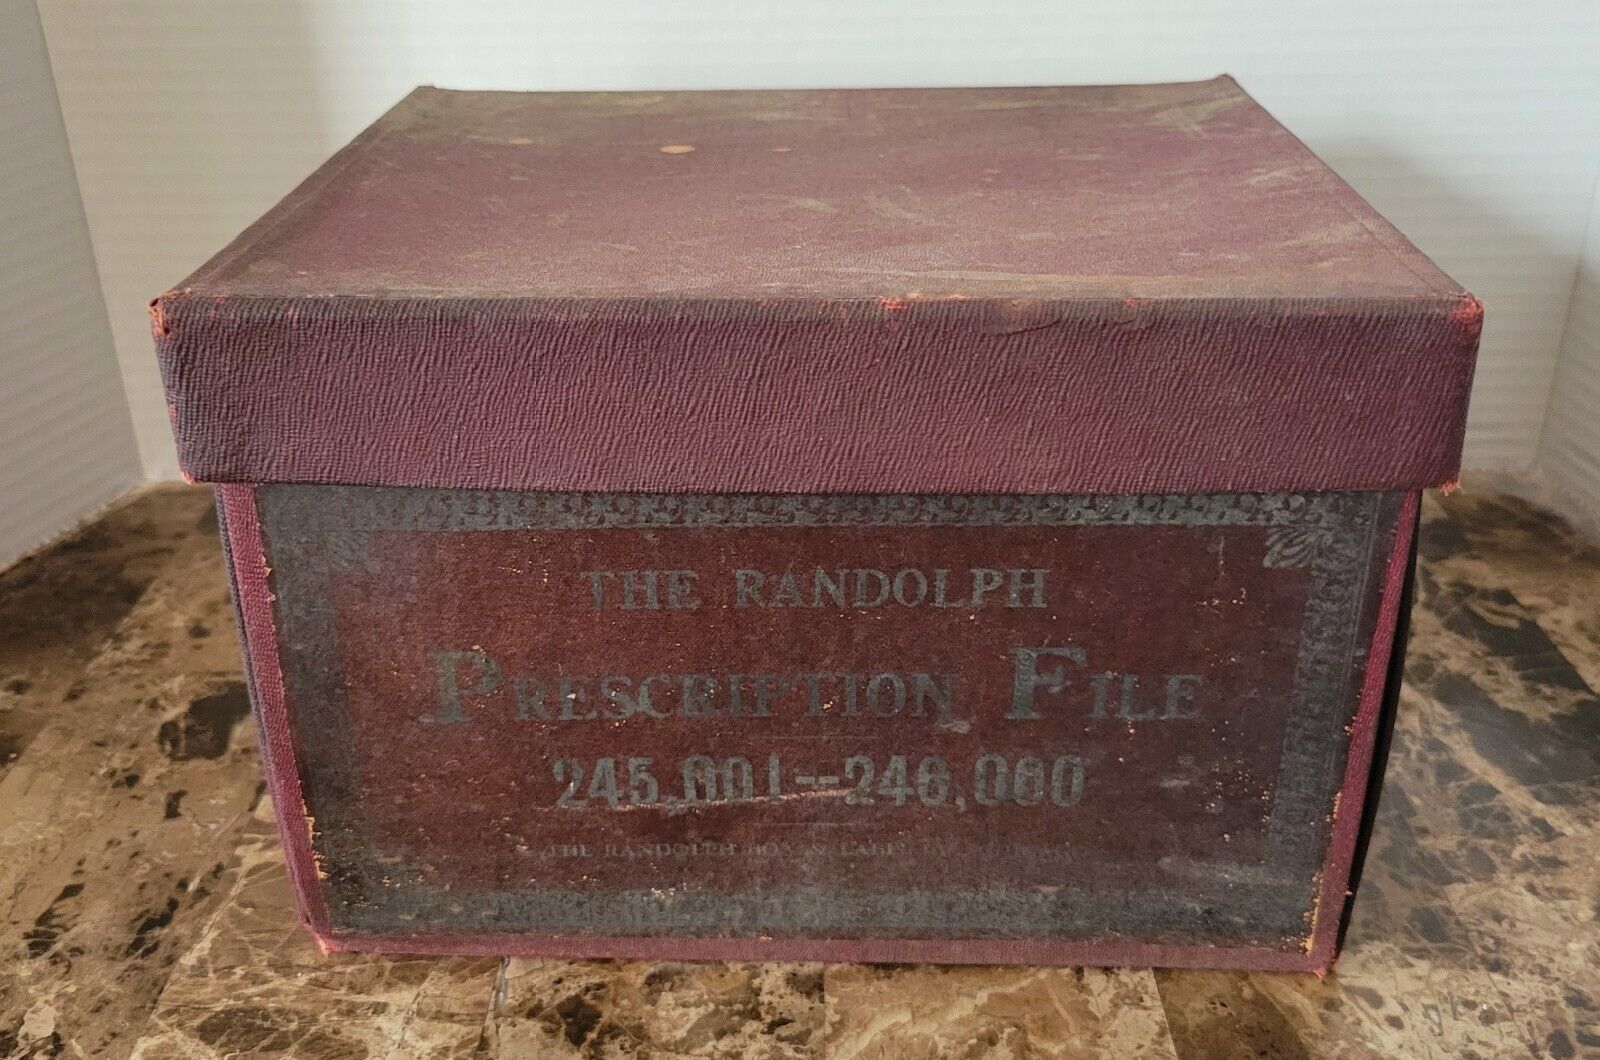 Randolph Prescription File Box w/ 999 scrips from 1927 -opium, cocaine, heroin